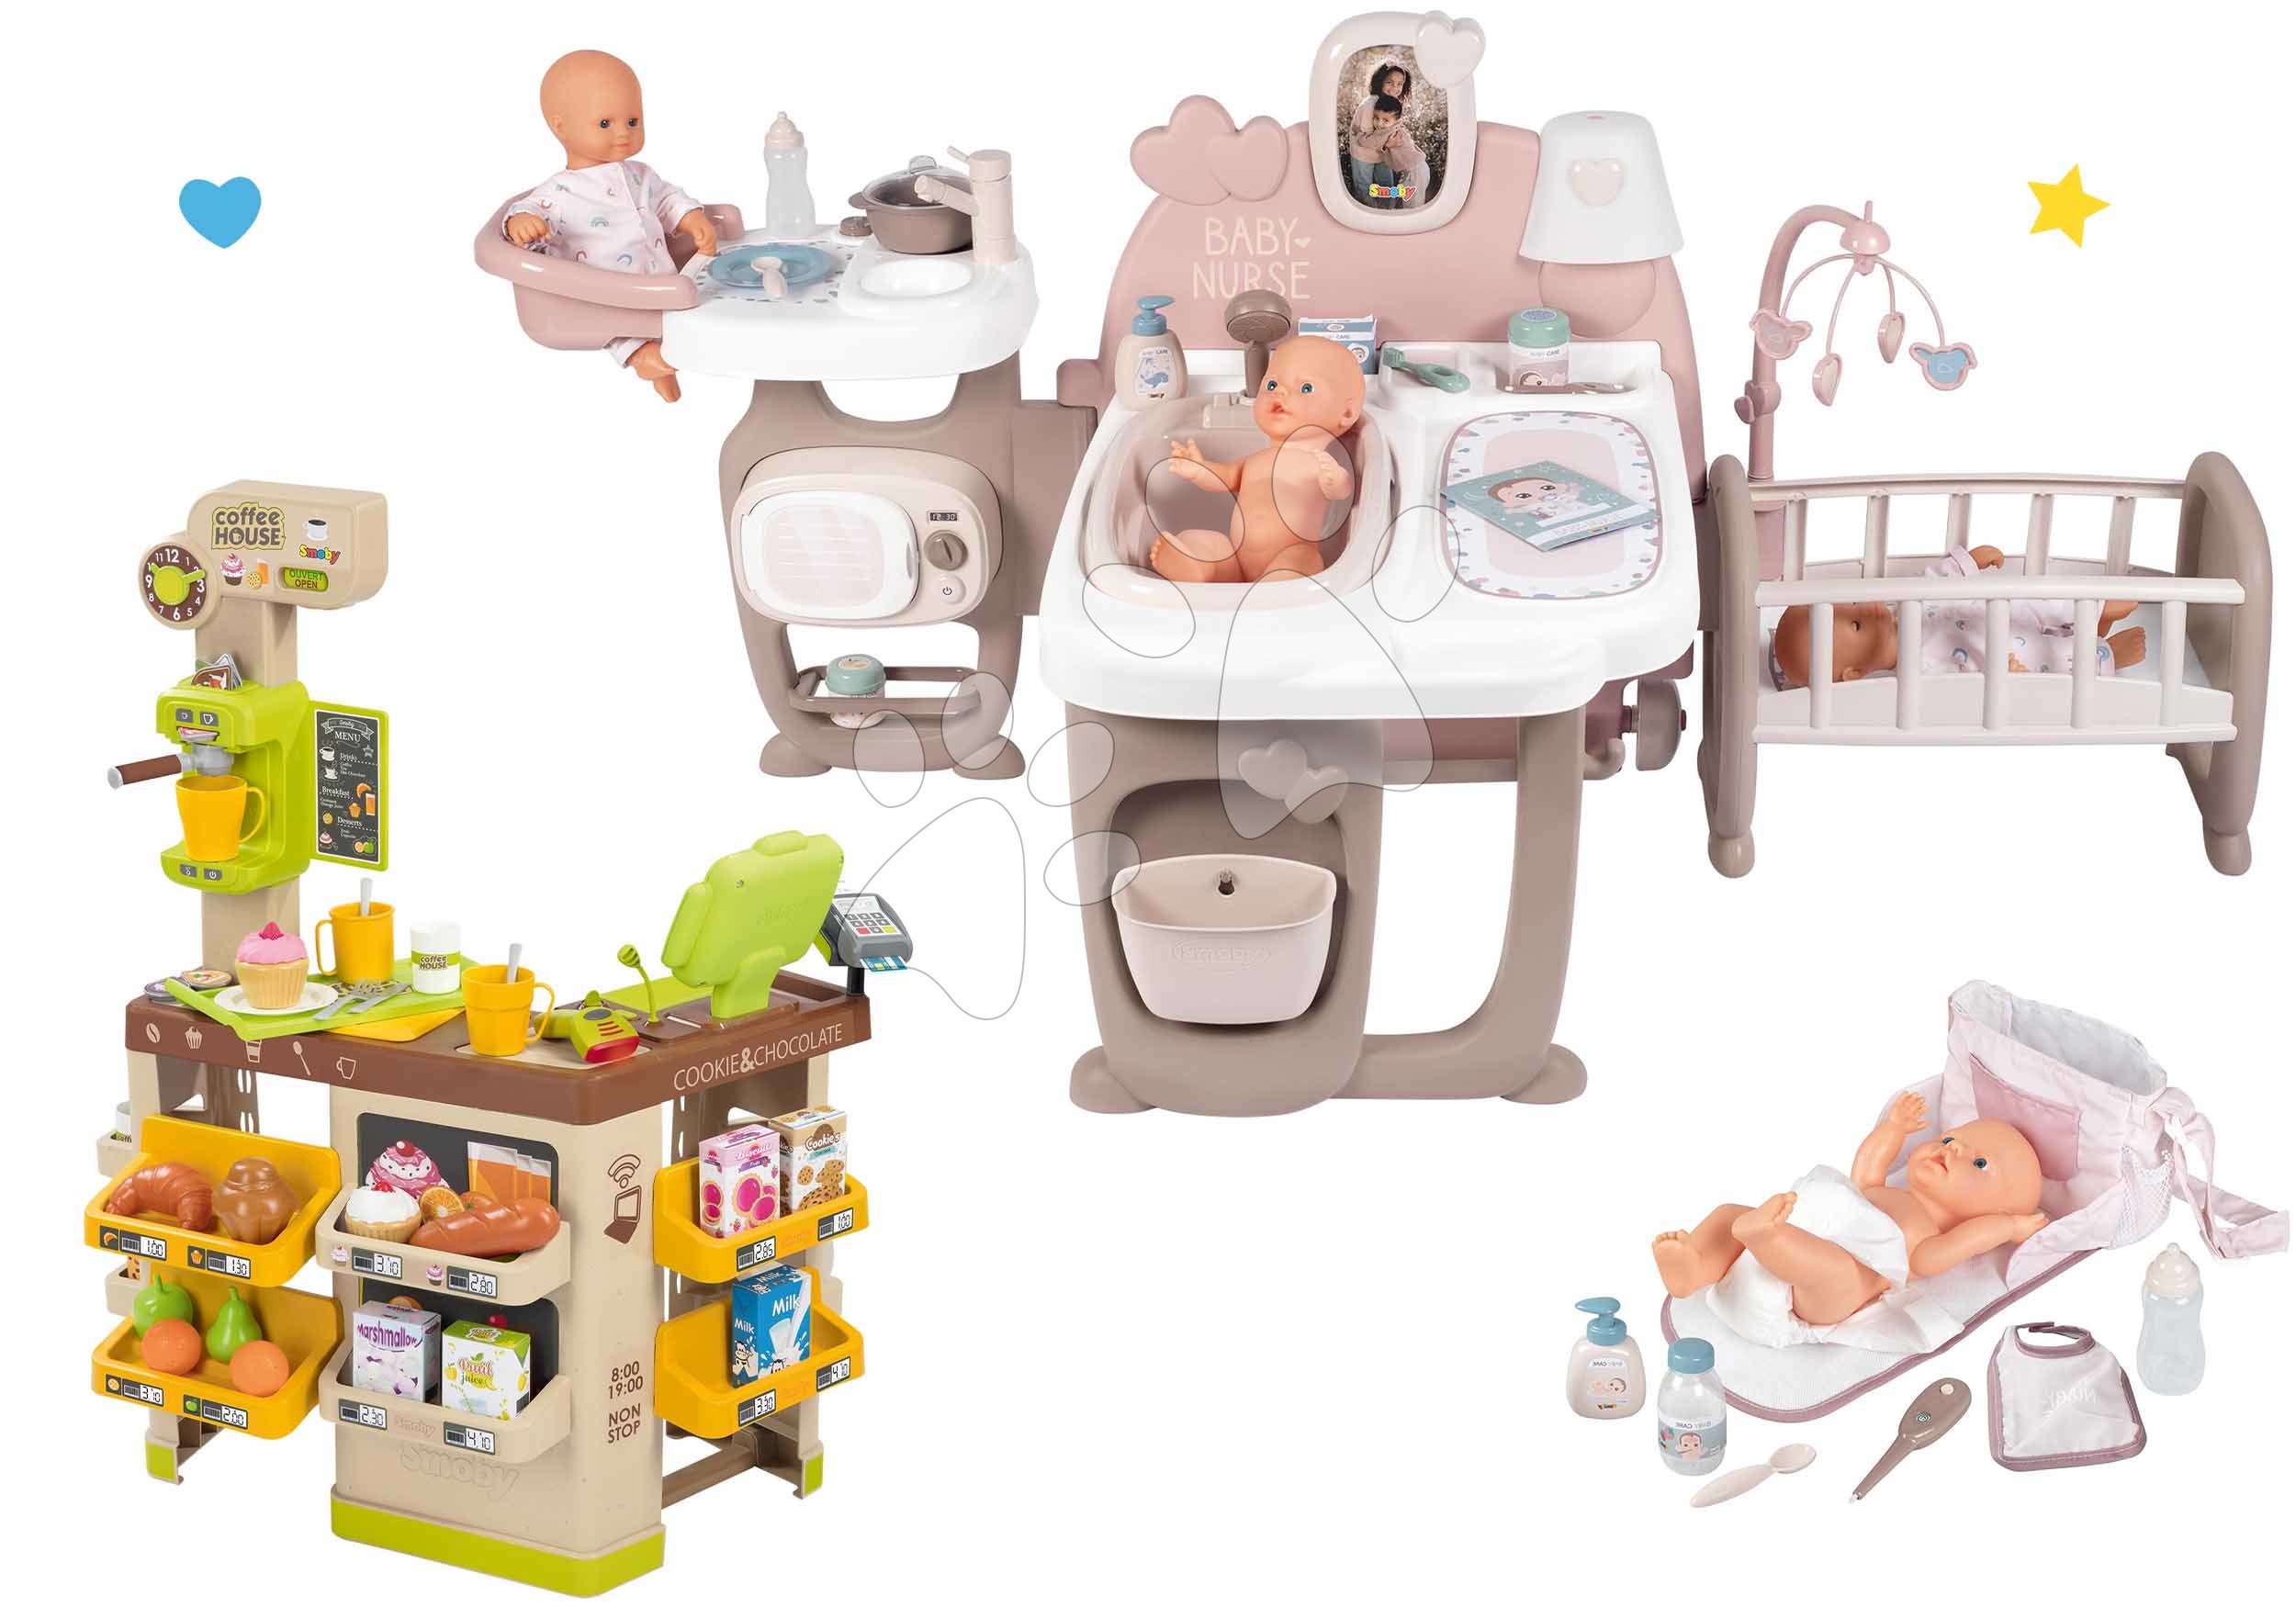 Domčeky pre bábiky sety - Set domček pre bábiku Large Doll's Play Center Natur D'Amour Baby Nurse Smoby a kaviareň Bio s kávovarom a prebaľovacia taška s plienkou